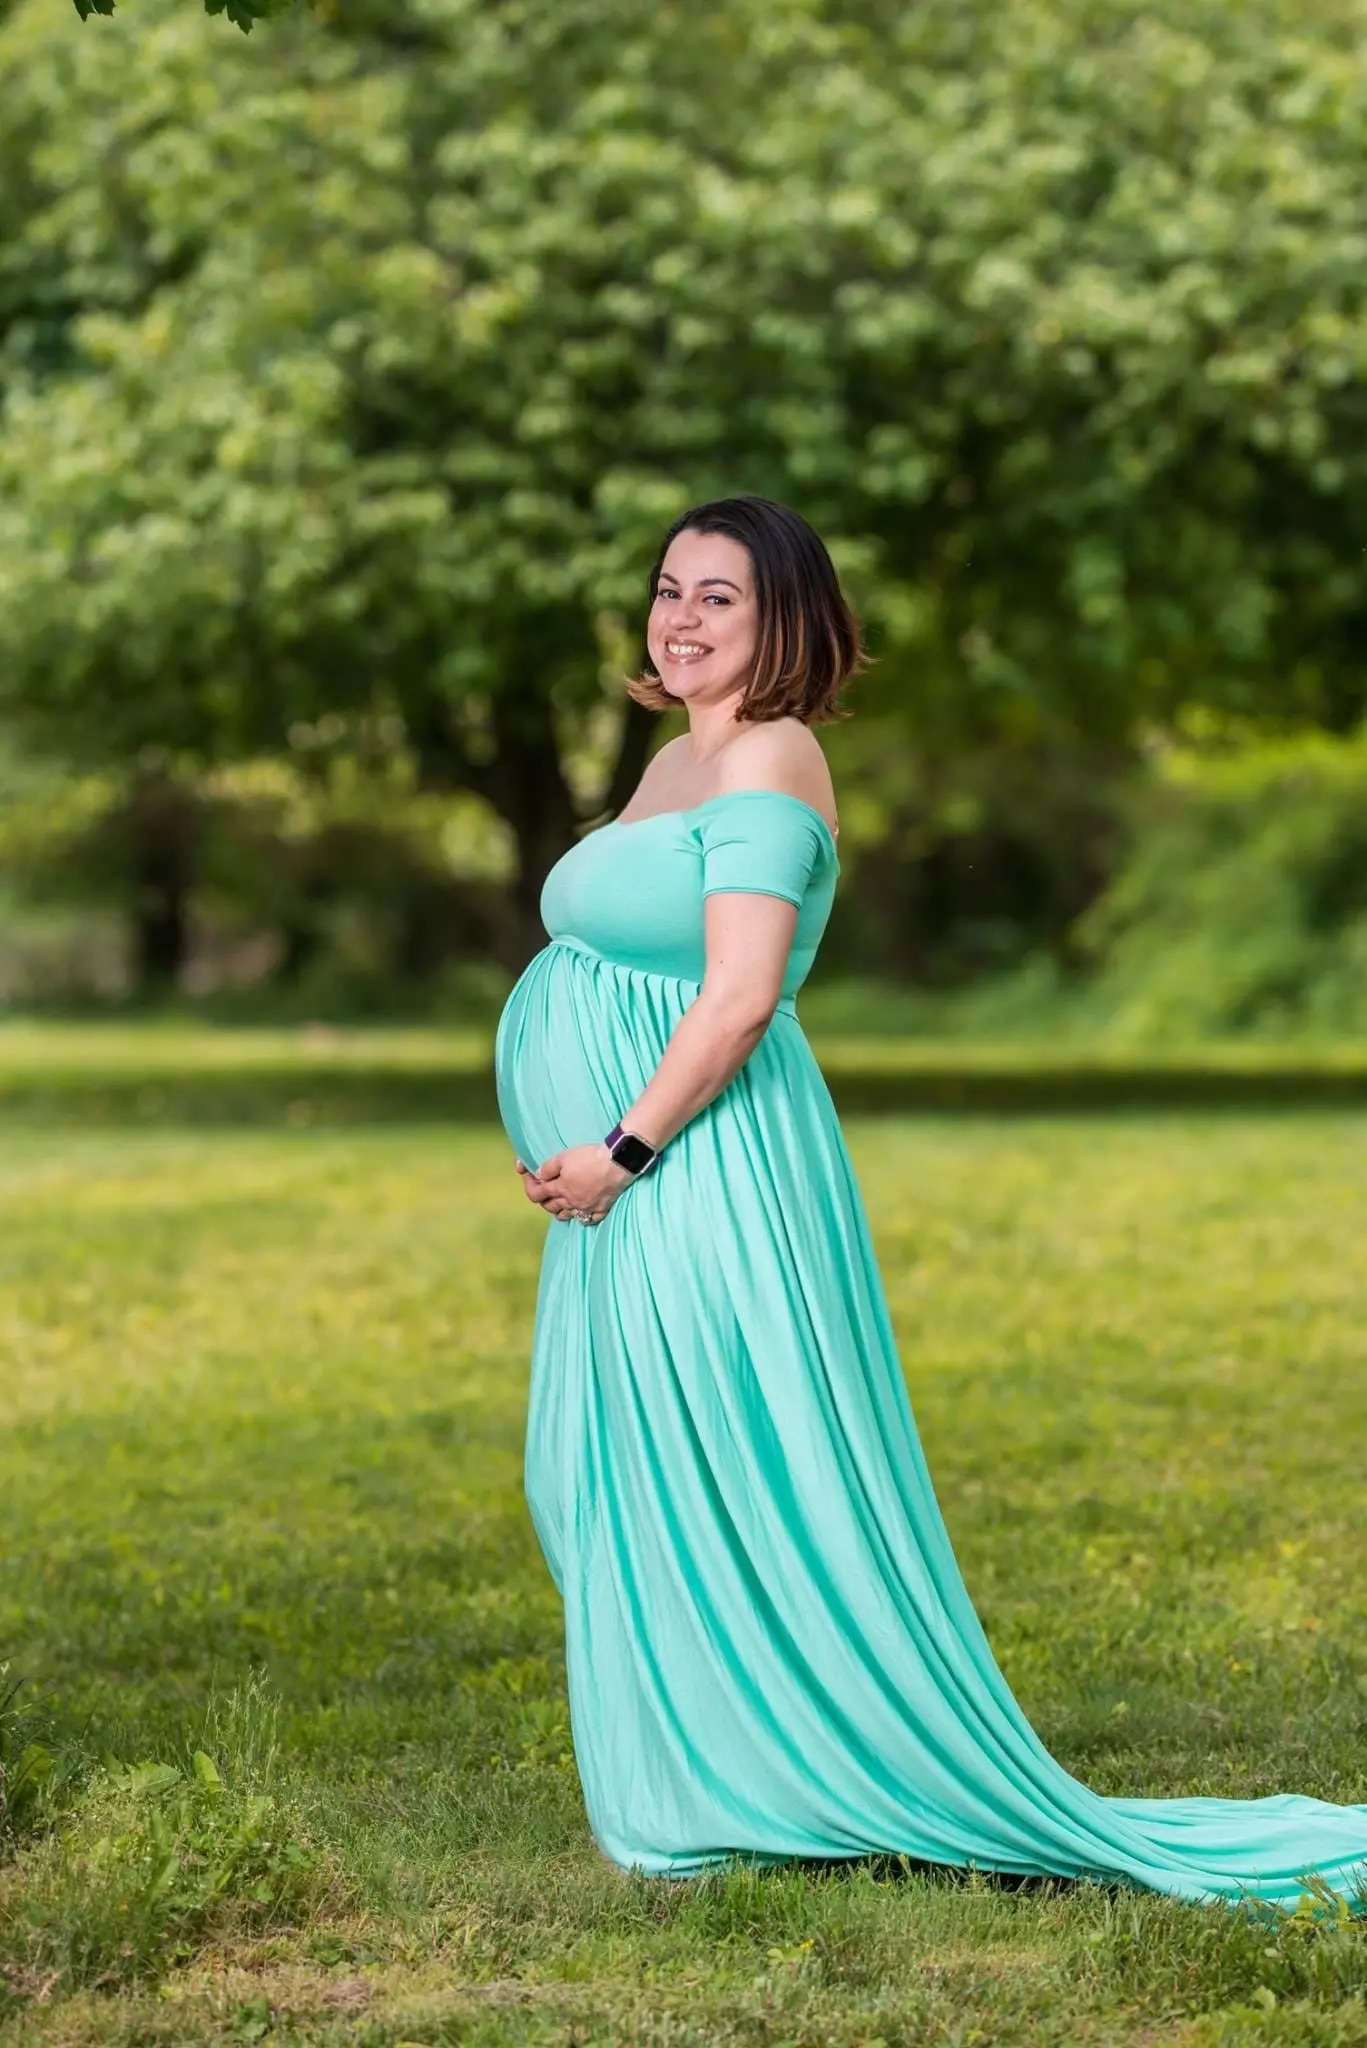 when to take maternity photos